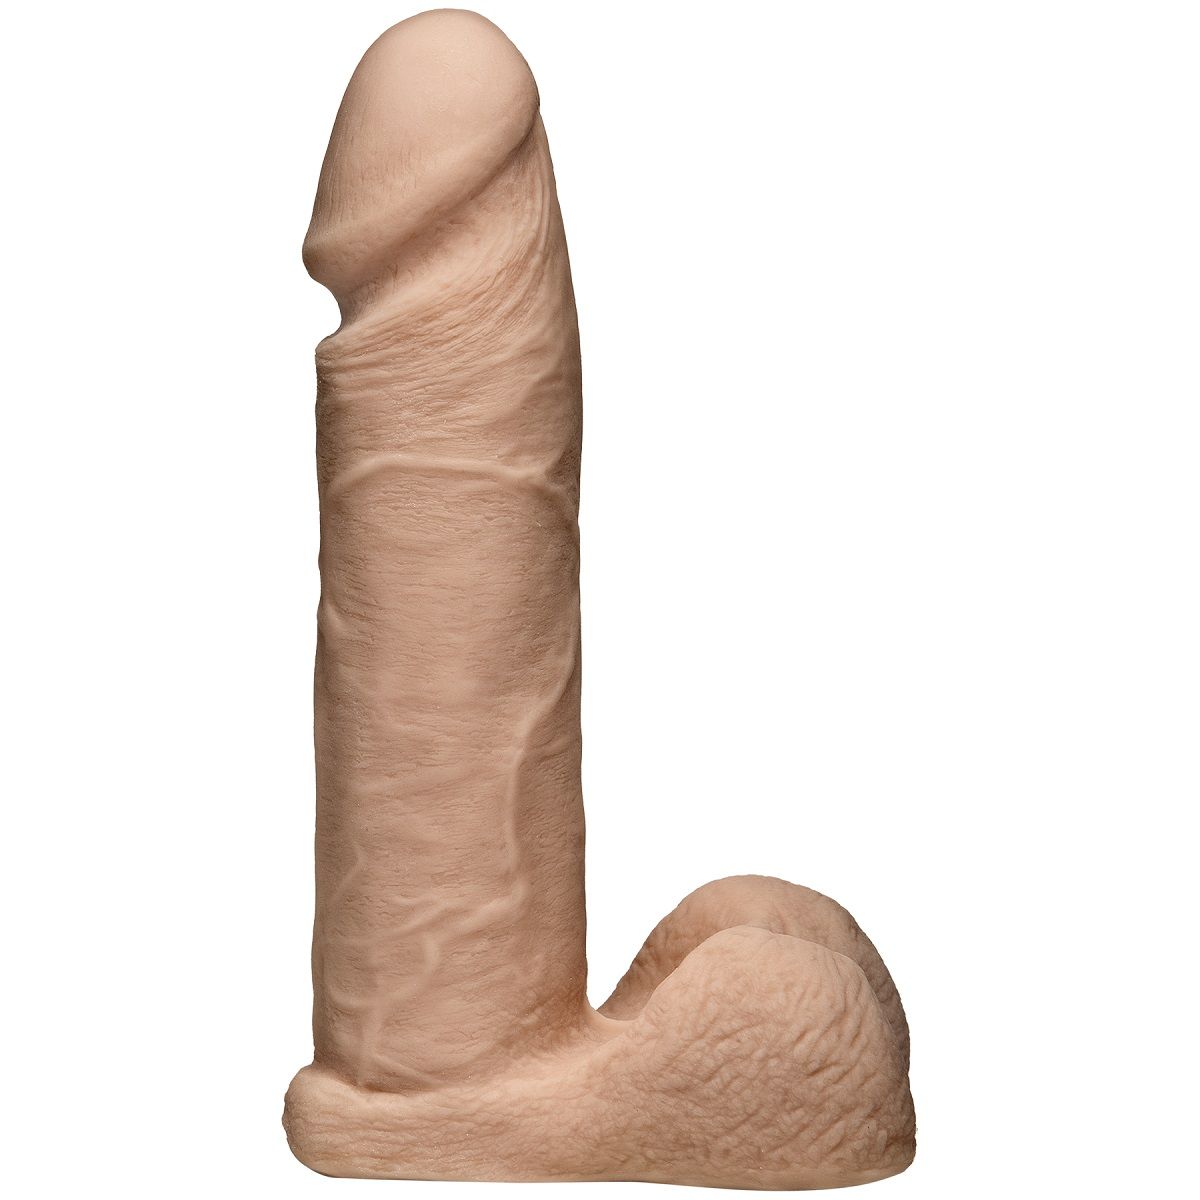 Этот фаллос может раздразнить сексуальное желание с первого взгляда на него. Чем? Впечатляющими размерами и реалистичными формами, конечно же. <br><br> Упругое тельце со вздувшимися венками, нежная, чётко очерченная головка, бархатистая поверхность… ммм! <br><br> Каждая деталь этой секс-игрушки, которую можно закрепить на штырьке трусиков Harness (приобретаются отдельно), сулит мощнейшую сексуальную разрядку! Рабочая длина - 18,54 см.